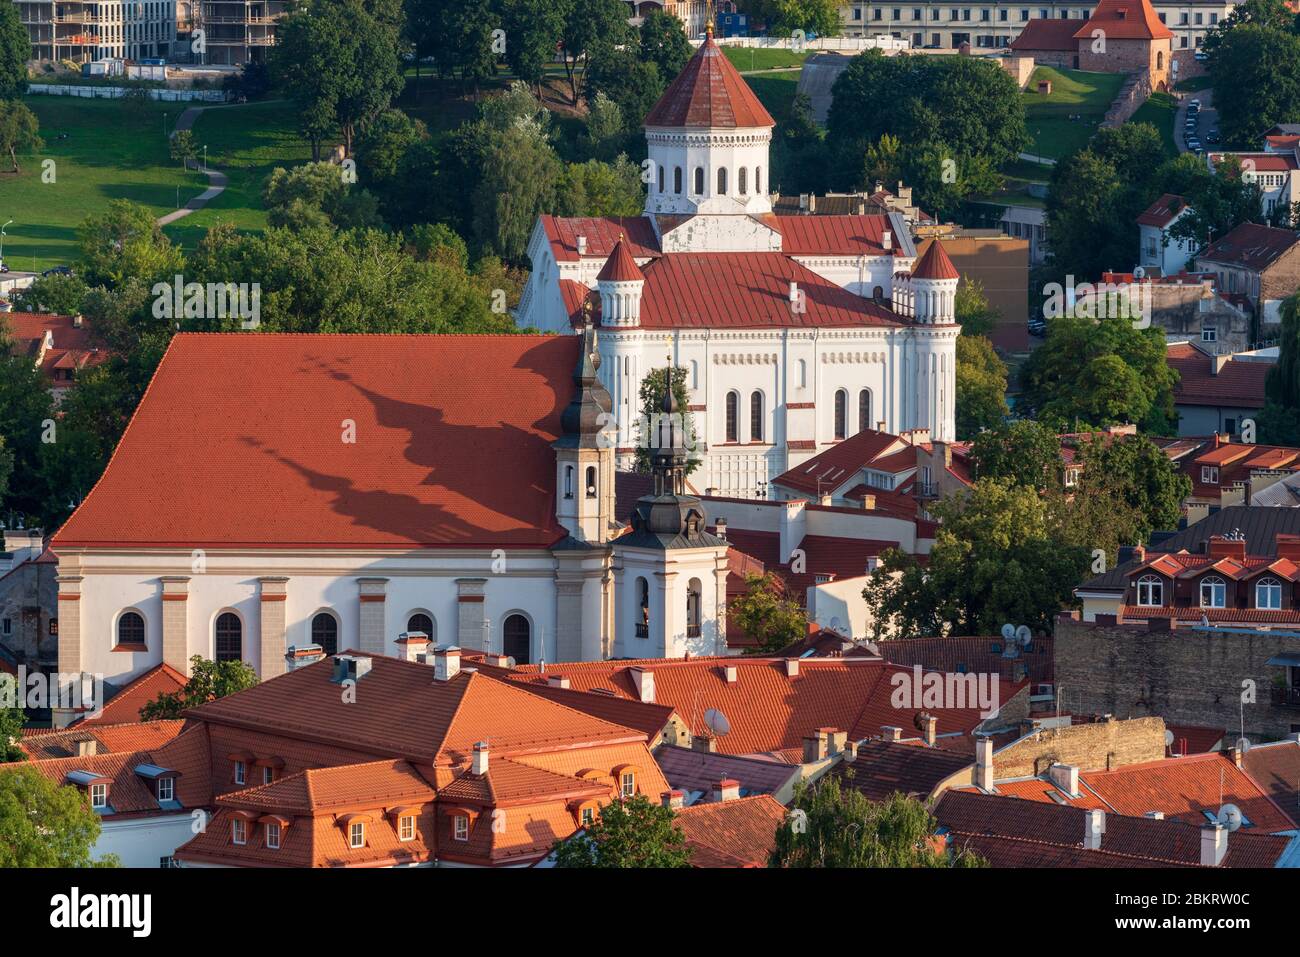 Lithuania (Baltic States), Vilnius, Theotokos Orthodox Cathedral Stock Photo